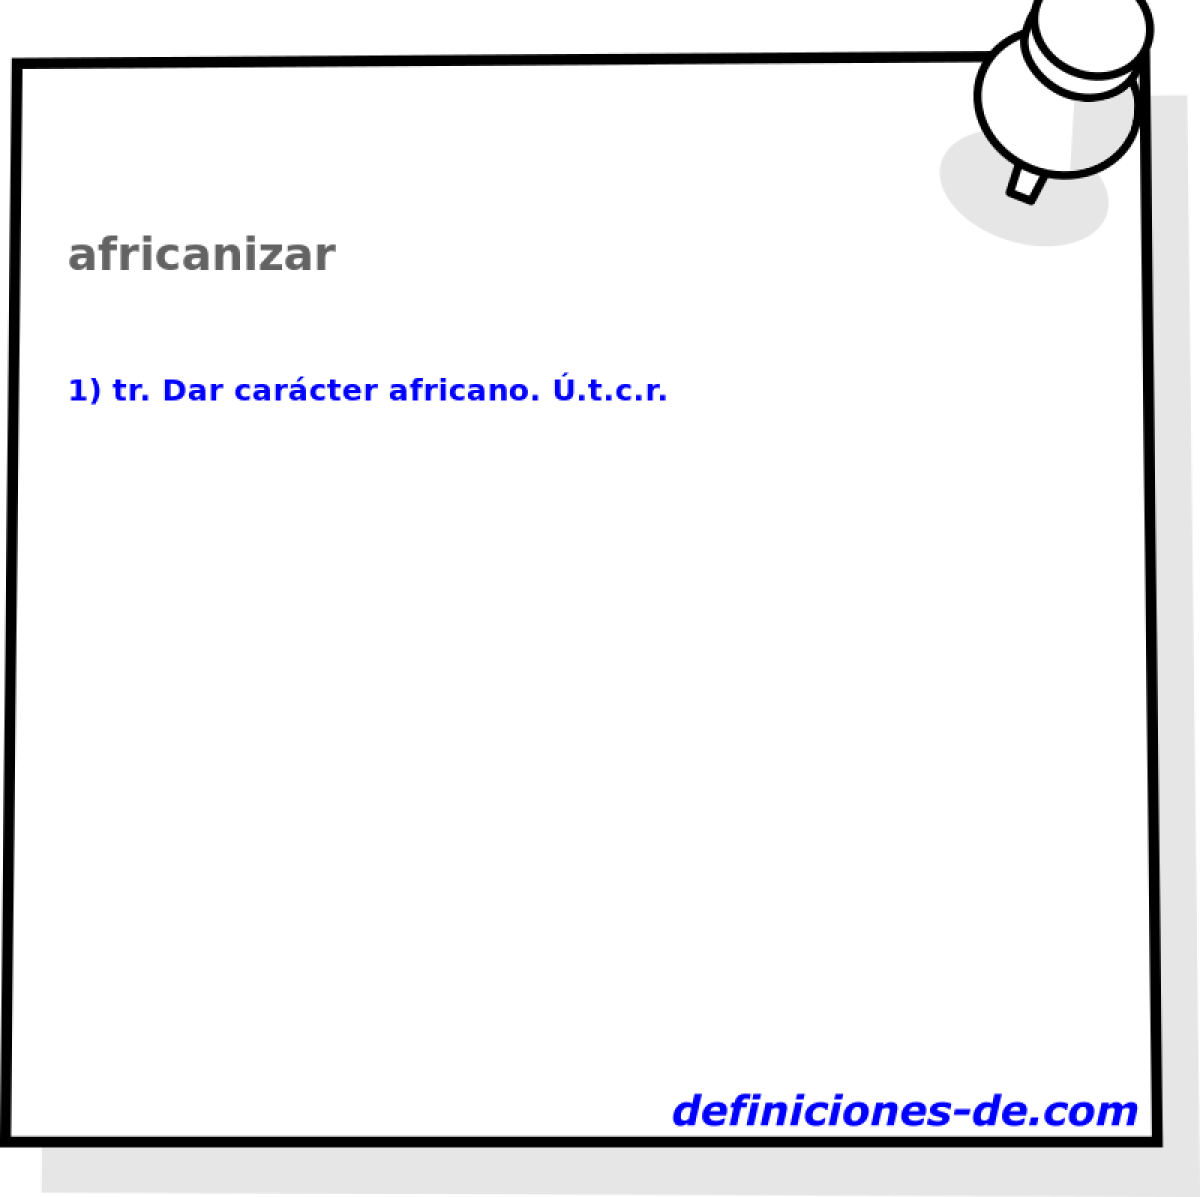 africanizar 